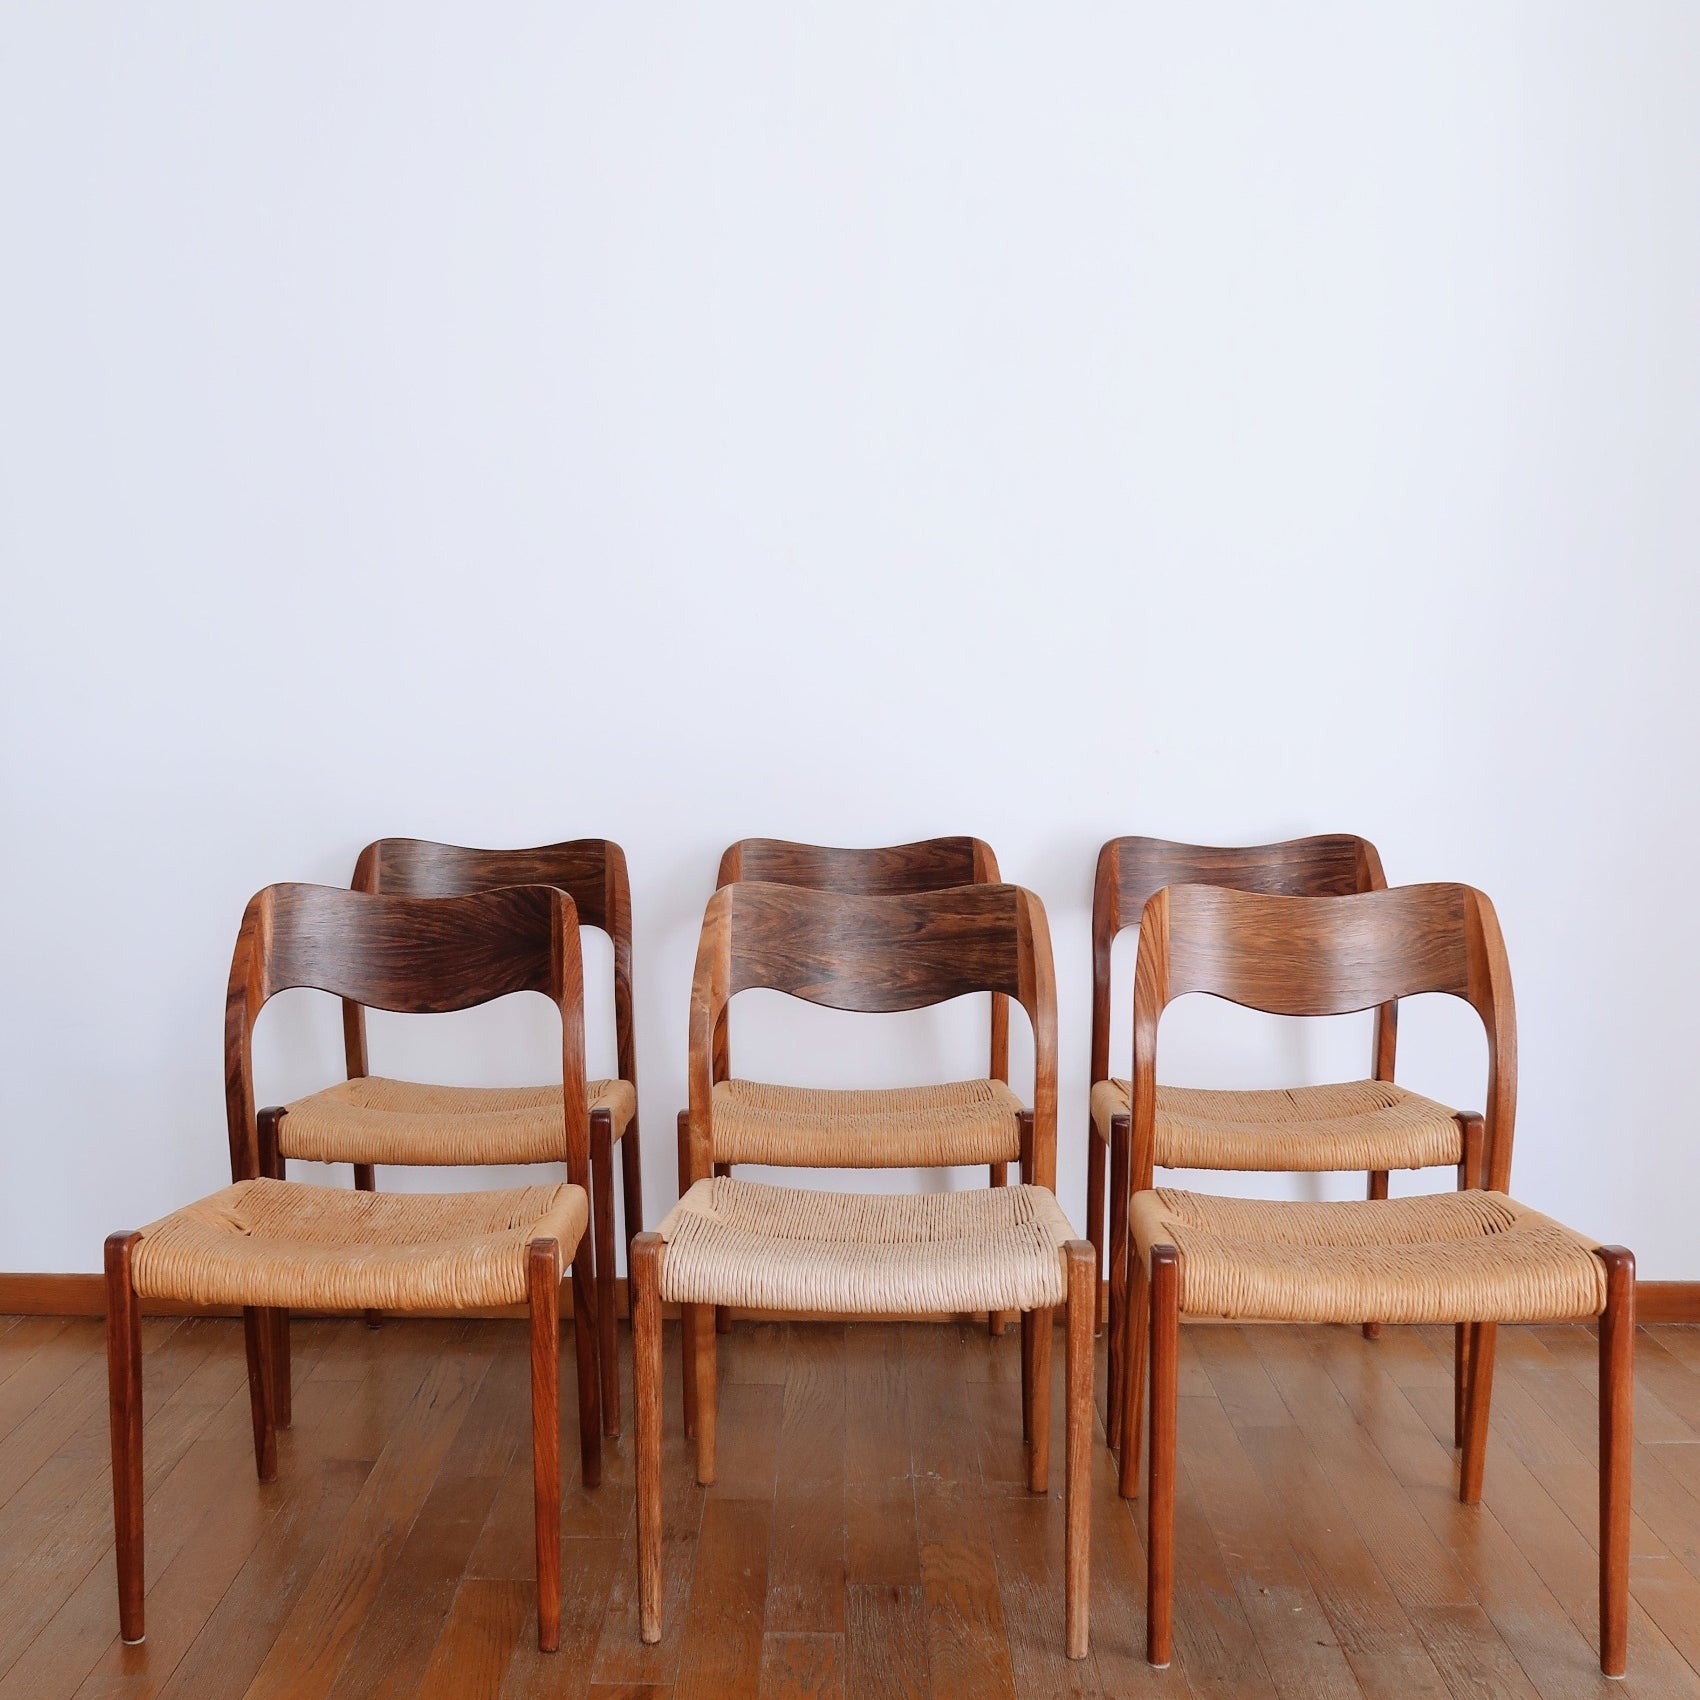 6 chaises Niels Otto Møller scandinave palissandre teck danois vintage paillée paillage corde cordée pieds compas fuselé bois